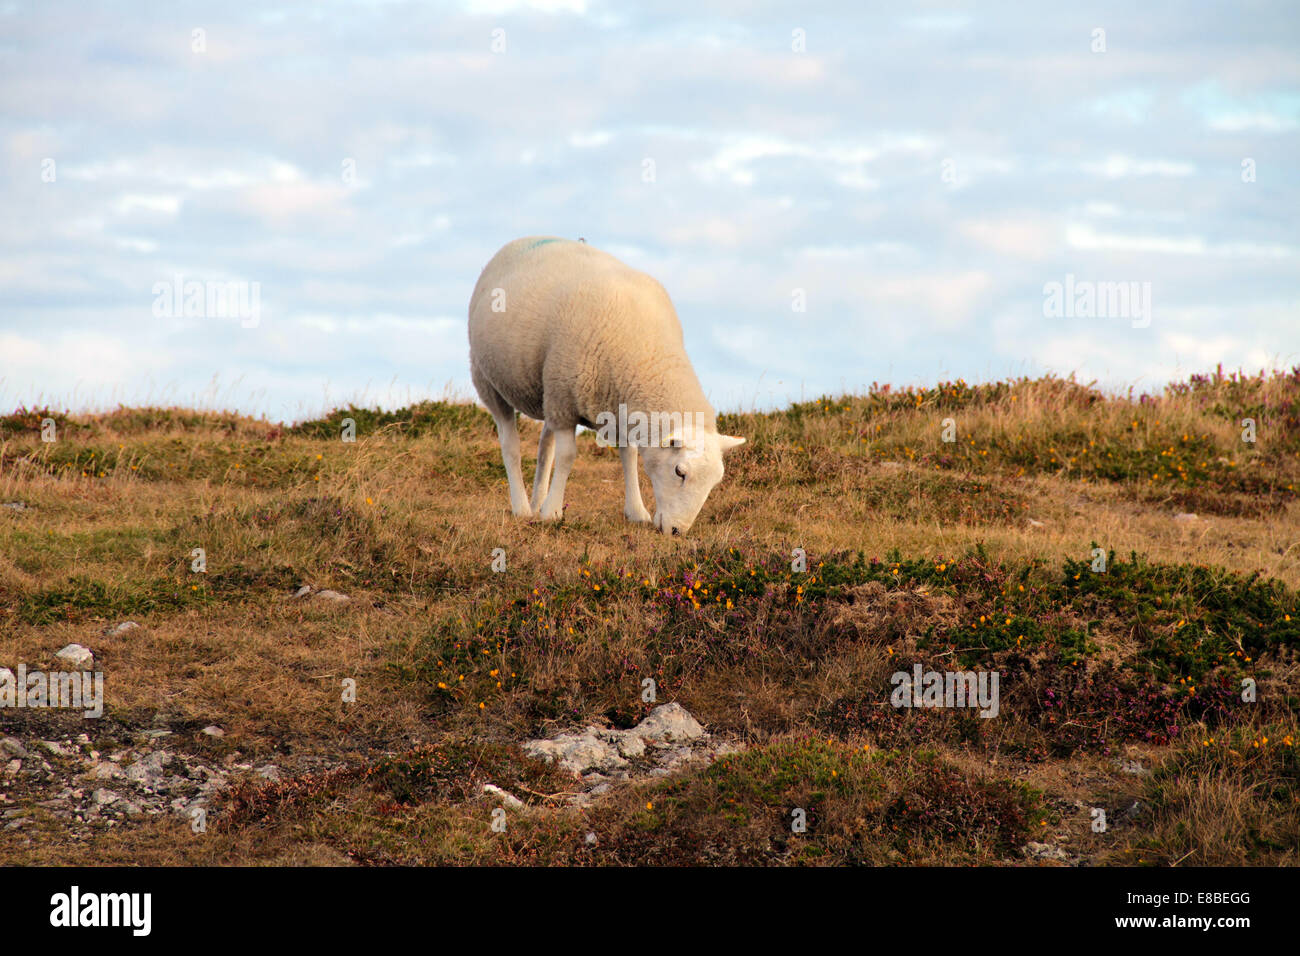 Sheep Ovis aries grazing Stock Photo